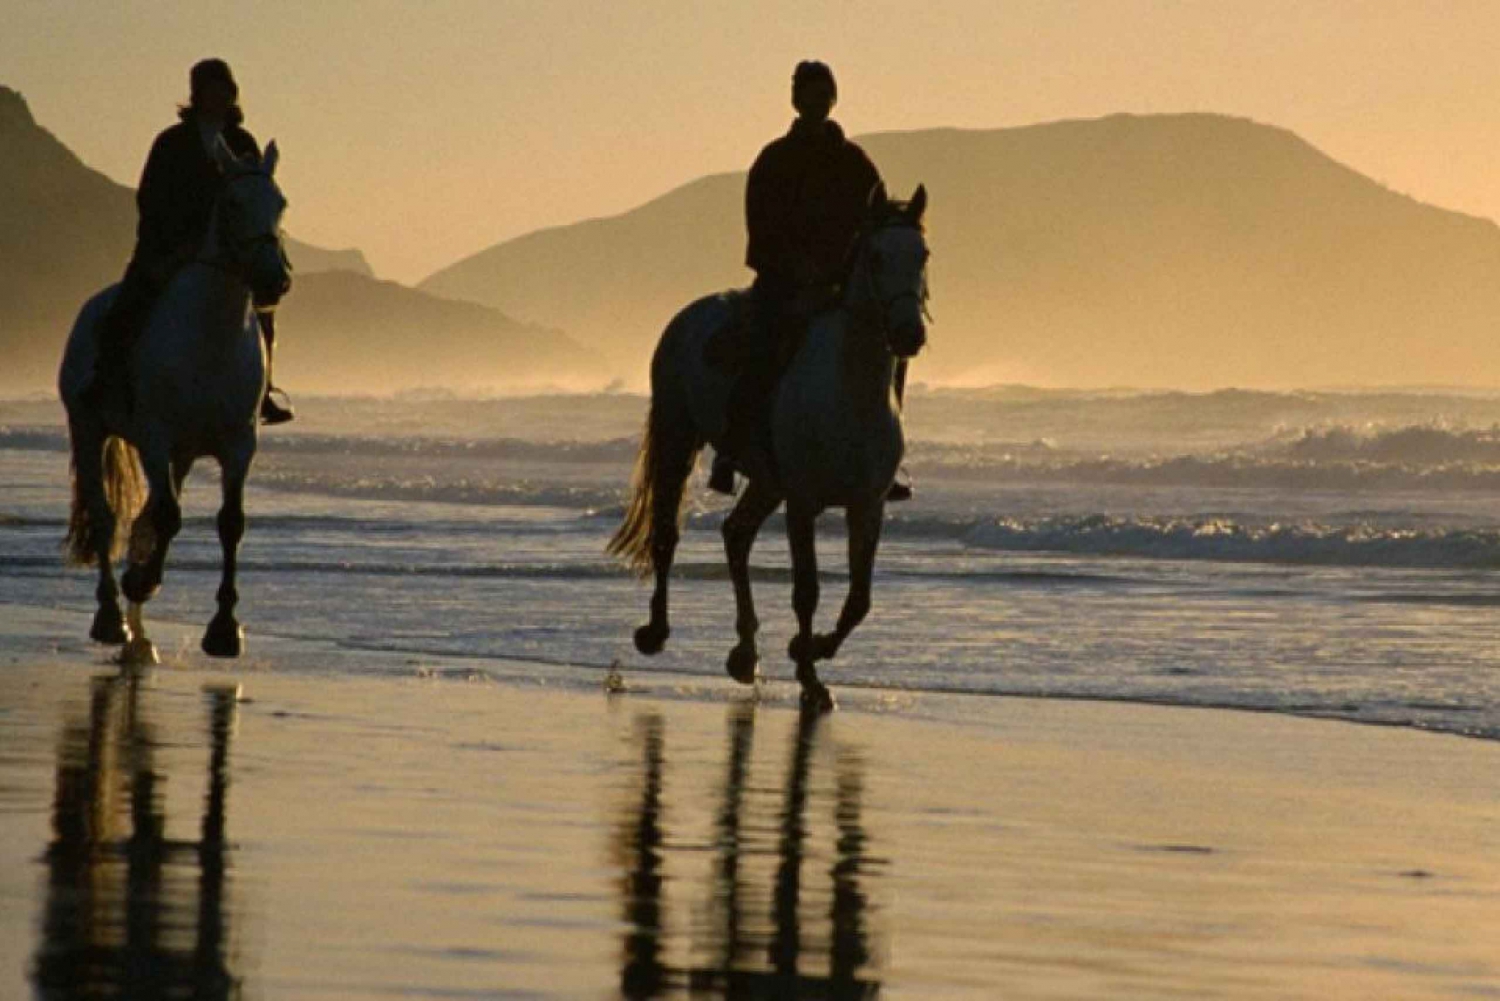 Excursiones a caballo también en Costa Rica